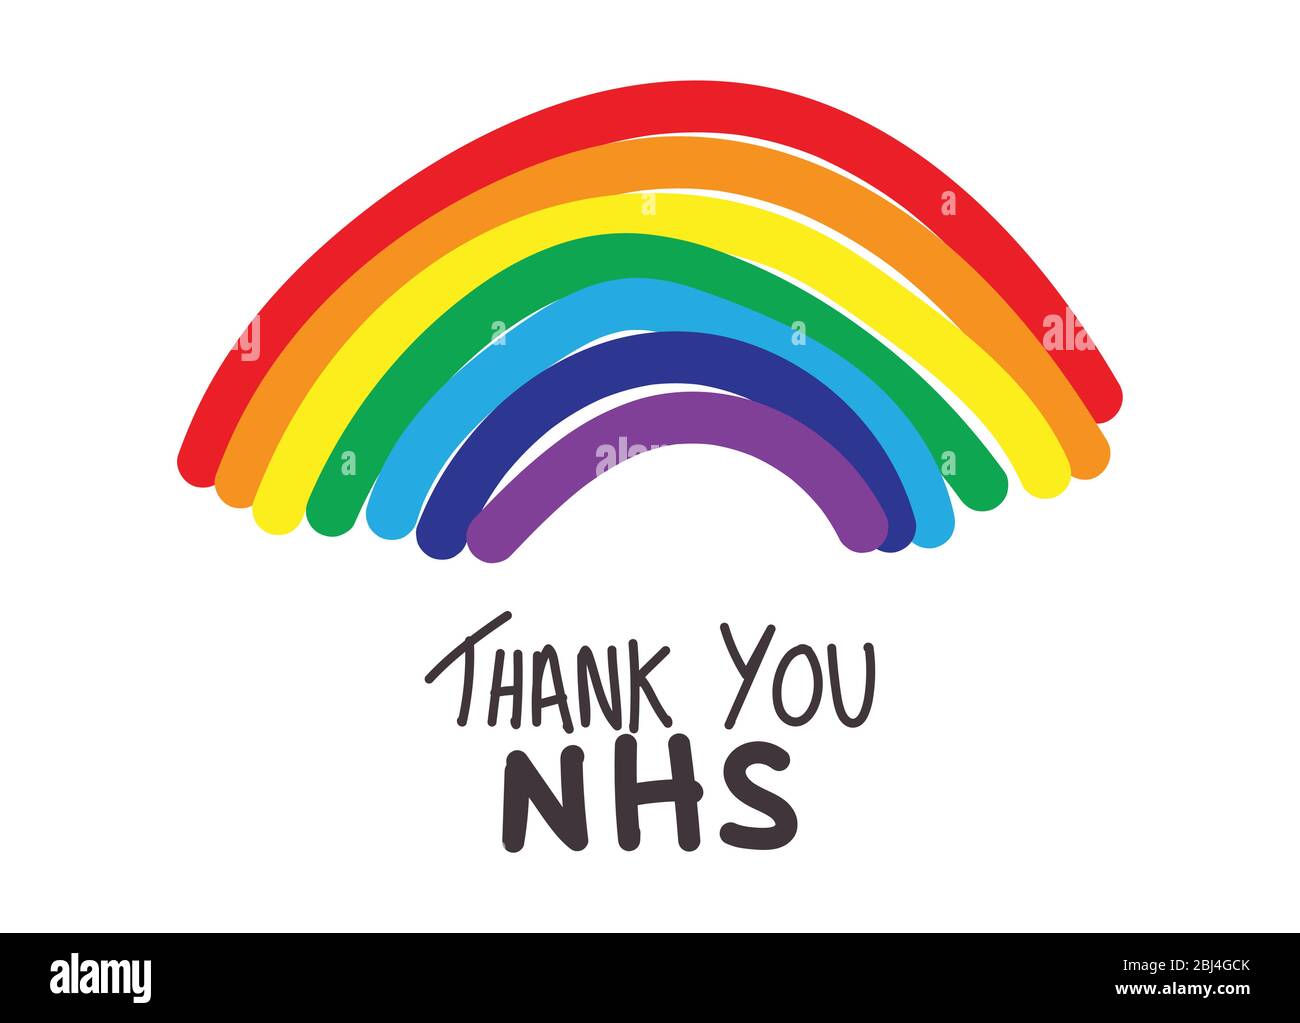 Merci NHS Rainbow Vector au cours de la pandémie de coronavirus de 2020 Illustration de Vecteur